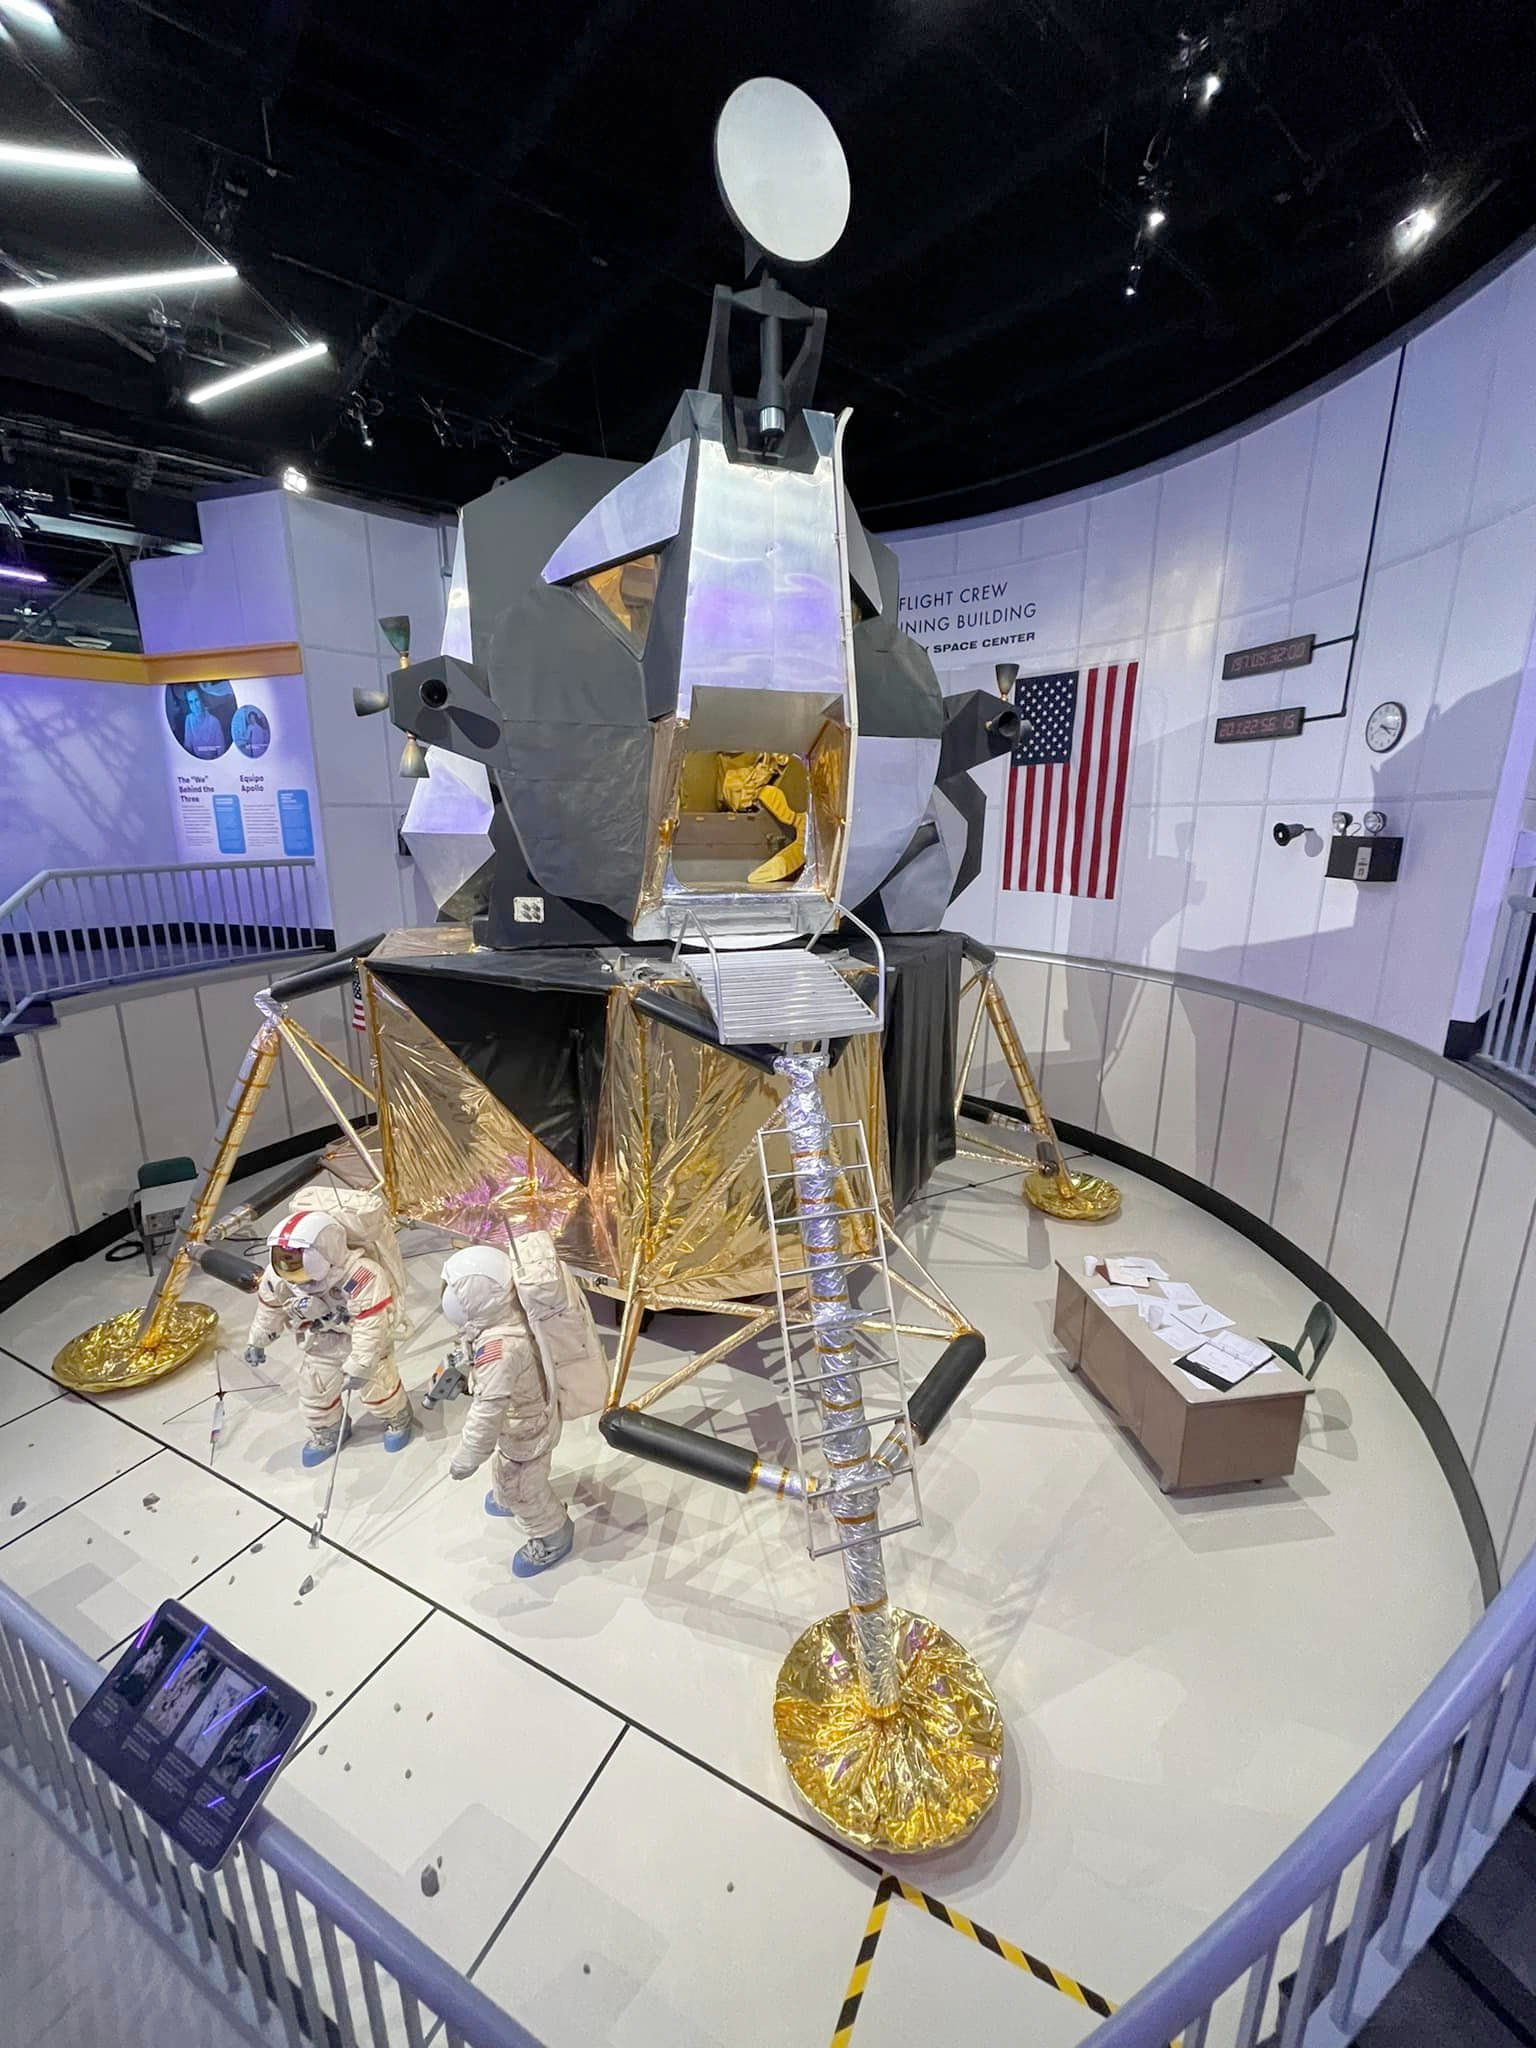 مدلی از فرودگر ماه در موزه به نمایش گذاشته شده است و در مقابل آن دو مانکن با لباس فضایی قرار دارند.